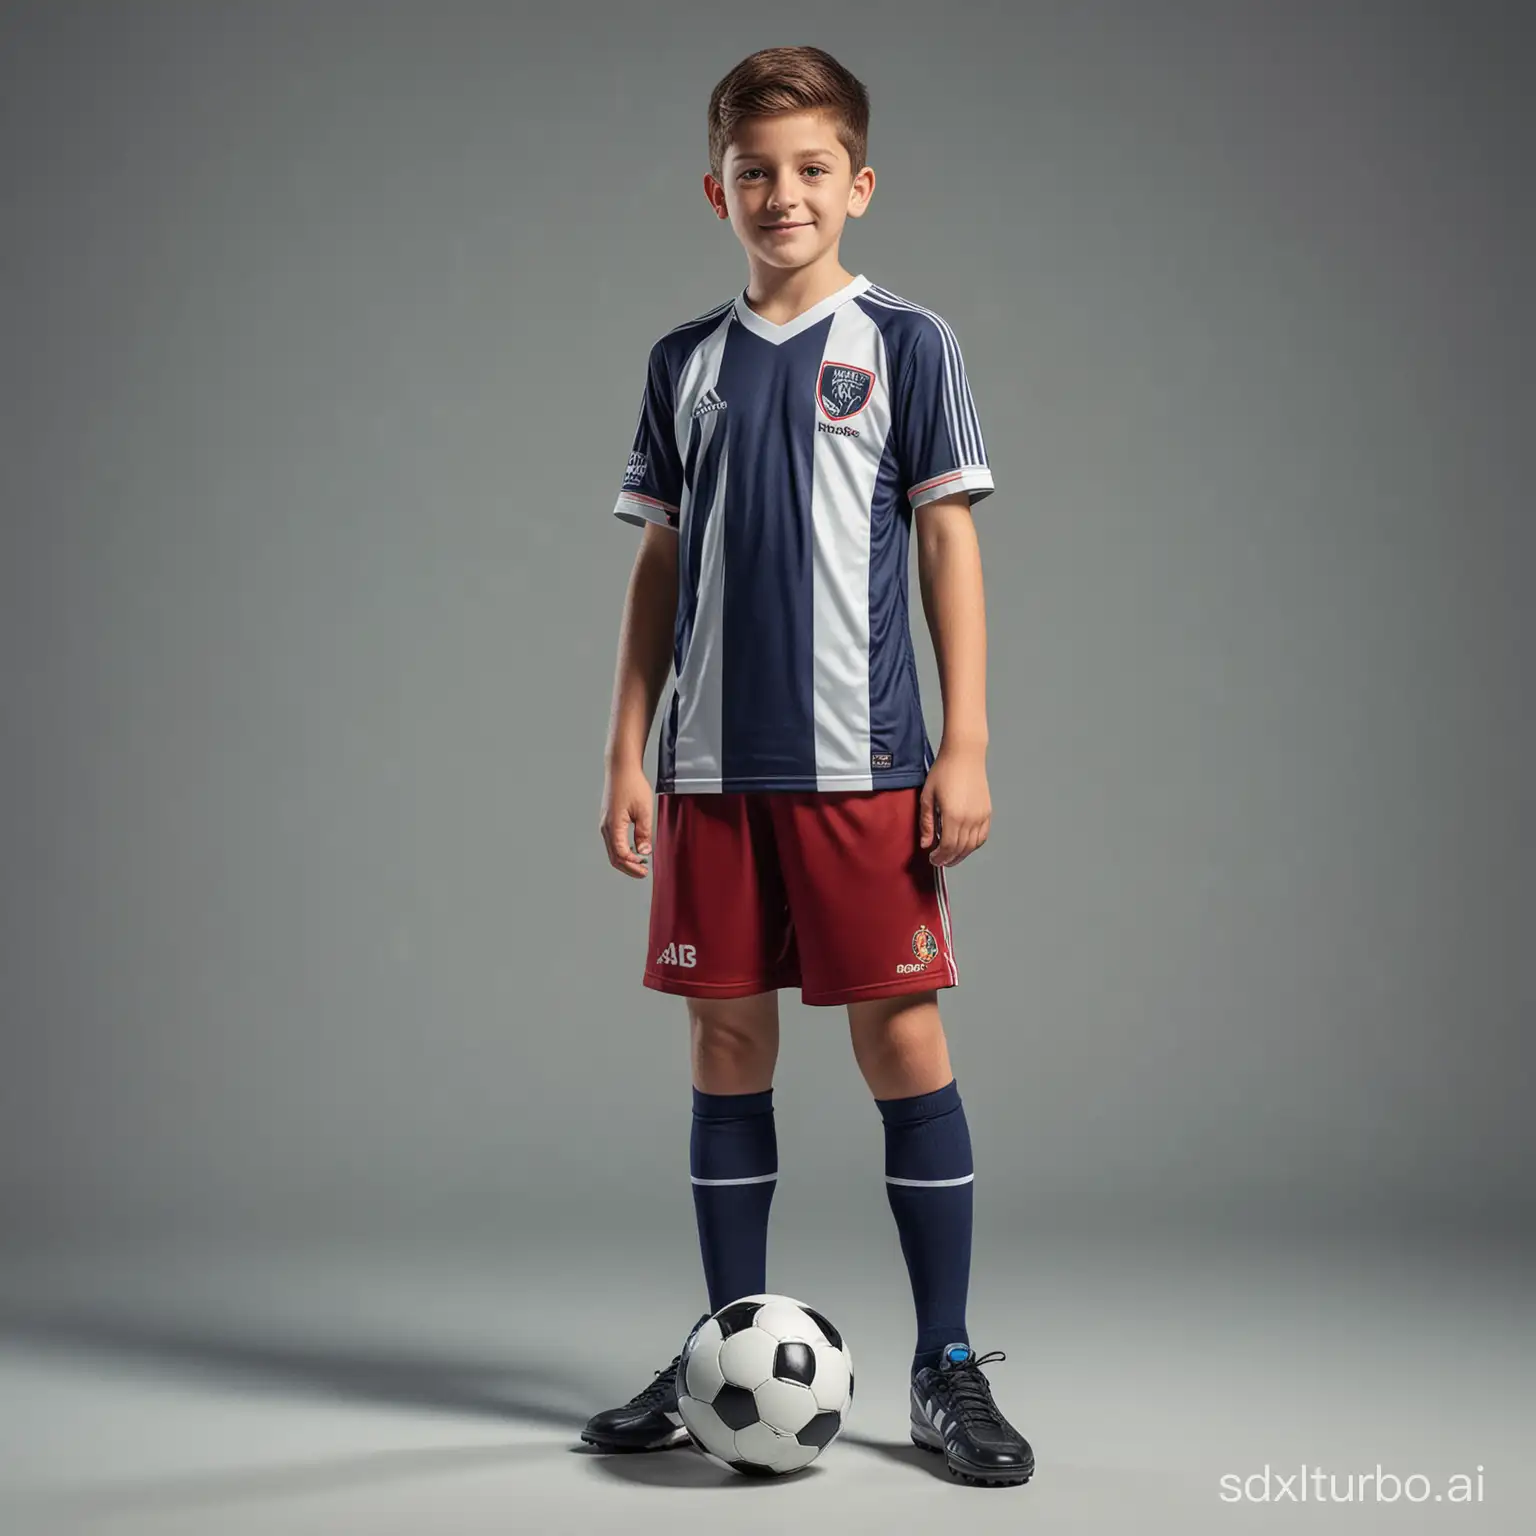 Tu como experto en diseñador gráfico puedes crear una imagen de un chico con un uniforme deportivo de fútbol 11 en 5D que se pueda dar la vuelta a 360 grados.